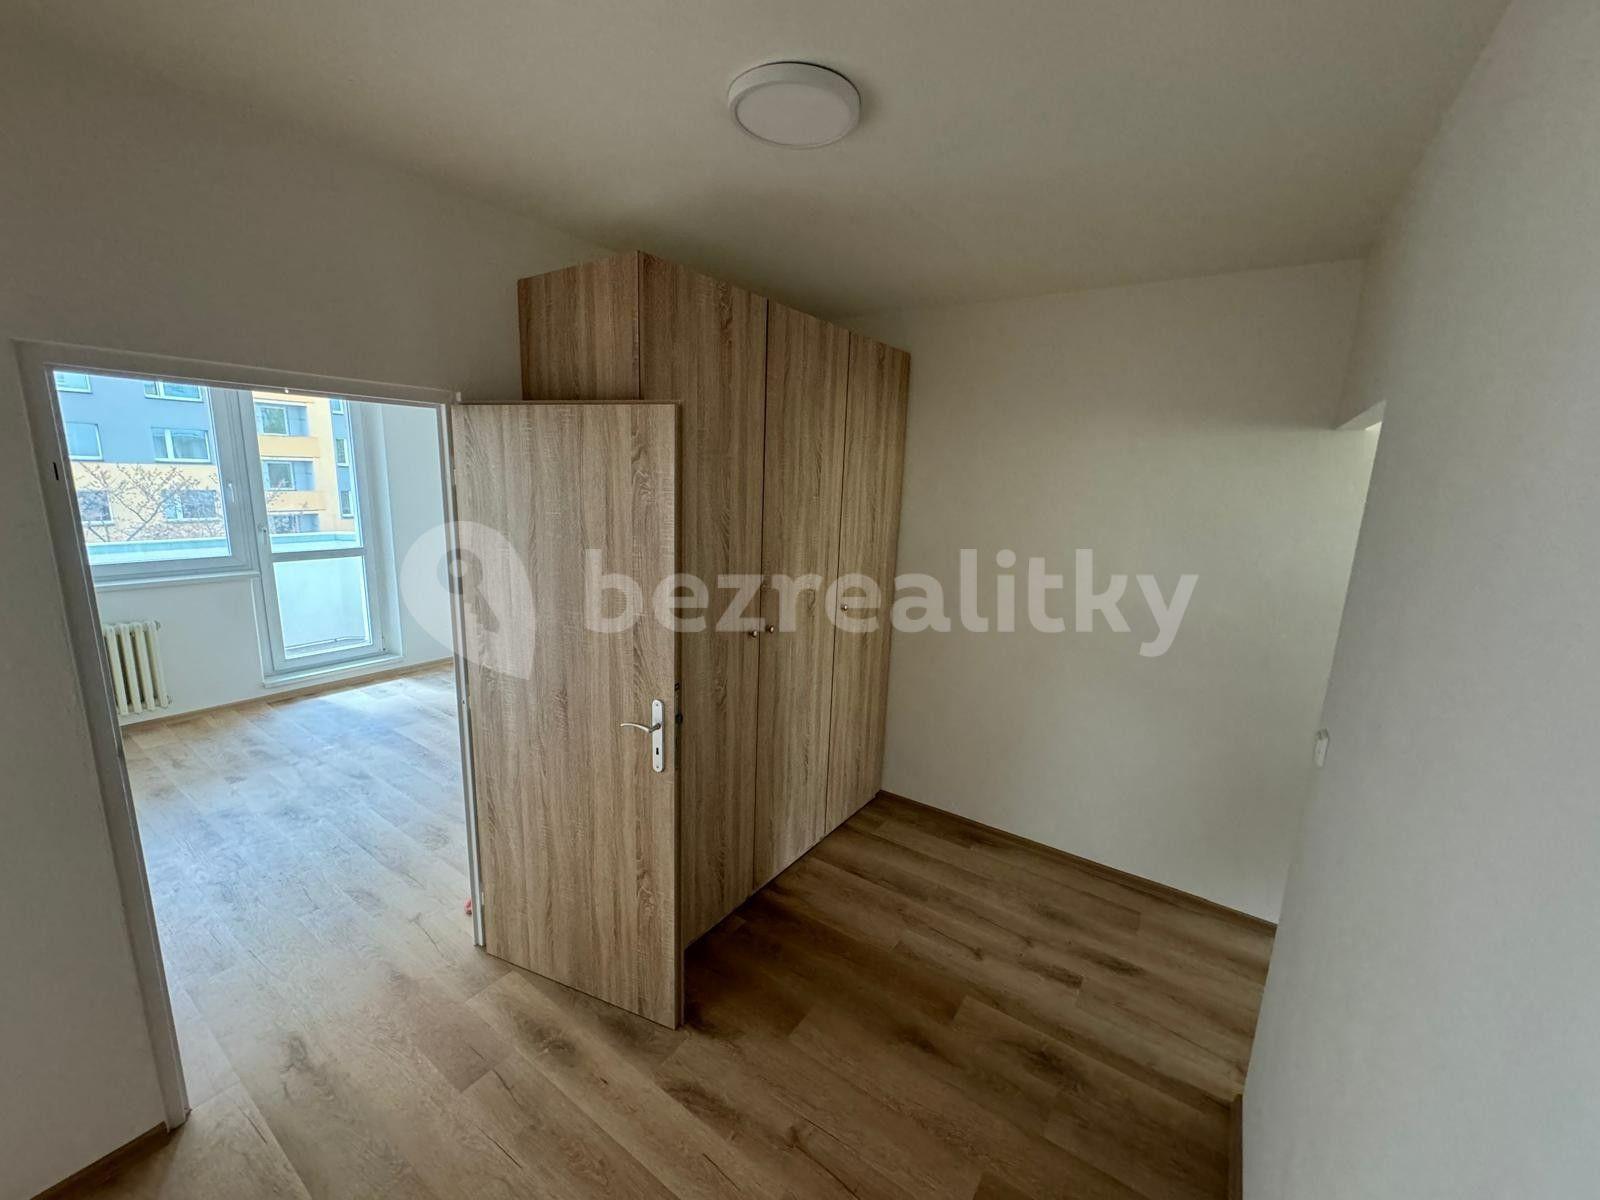 2 bedroom flat to rent, 53 m², Nádražní, Otrokovice, Zlínský Region